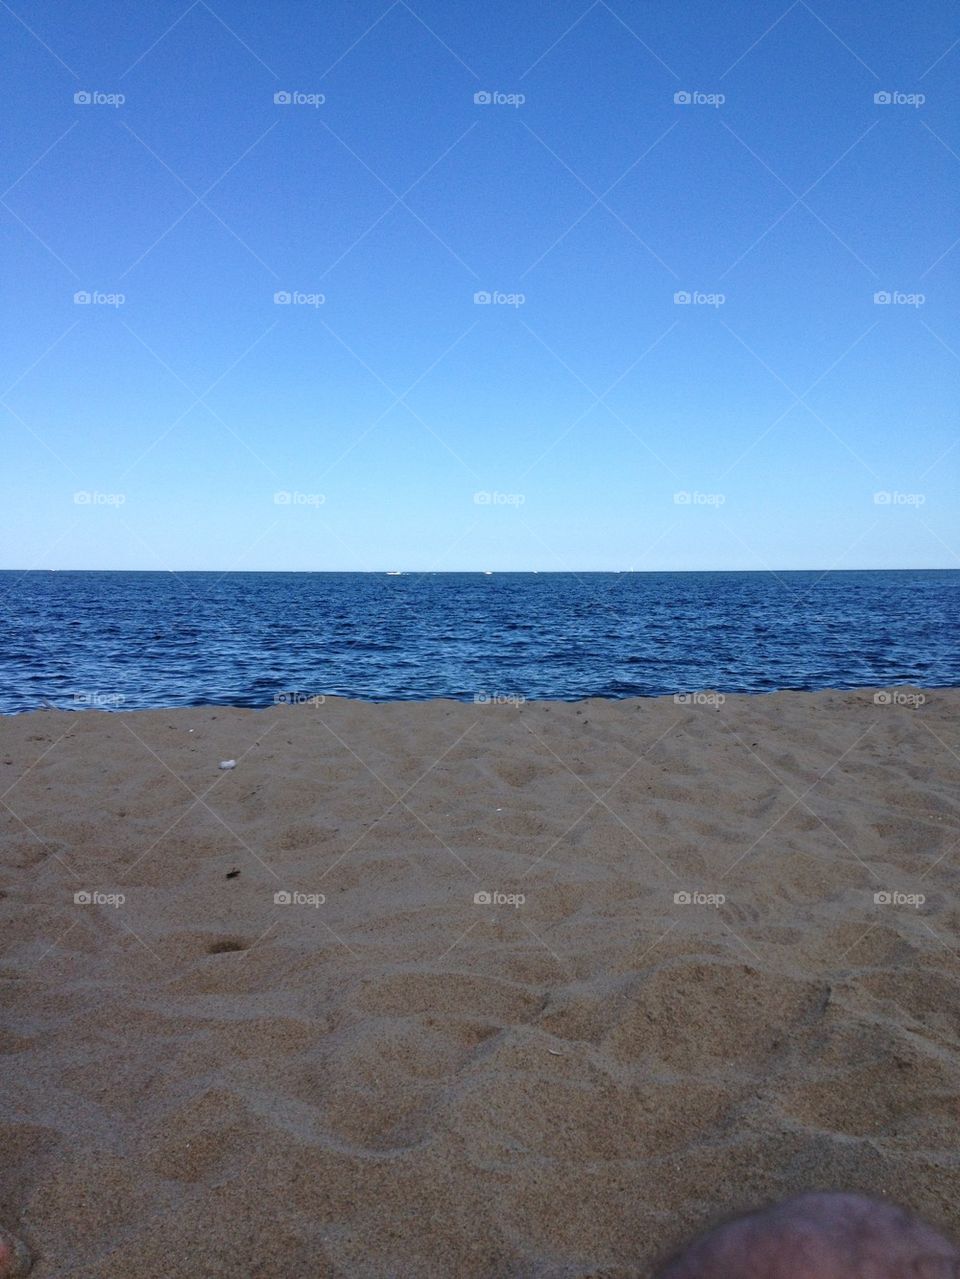 Sea meets sand. Plum Island, MA